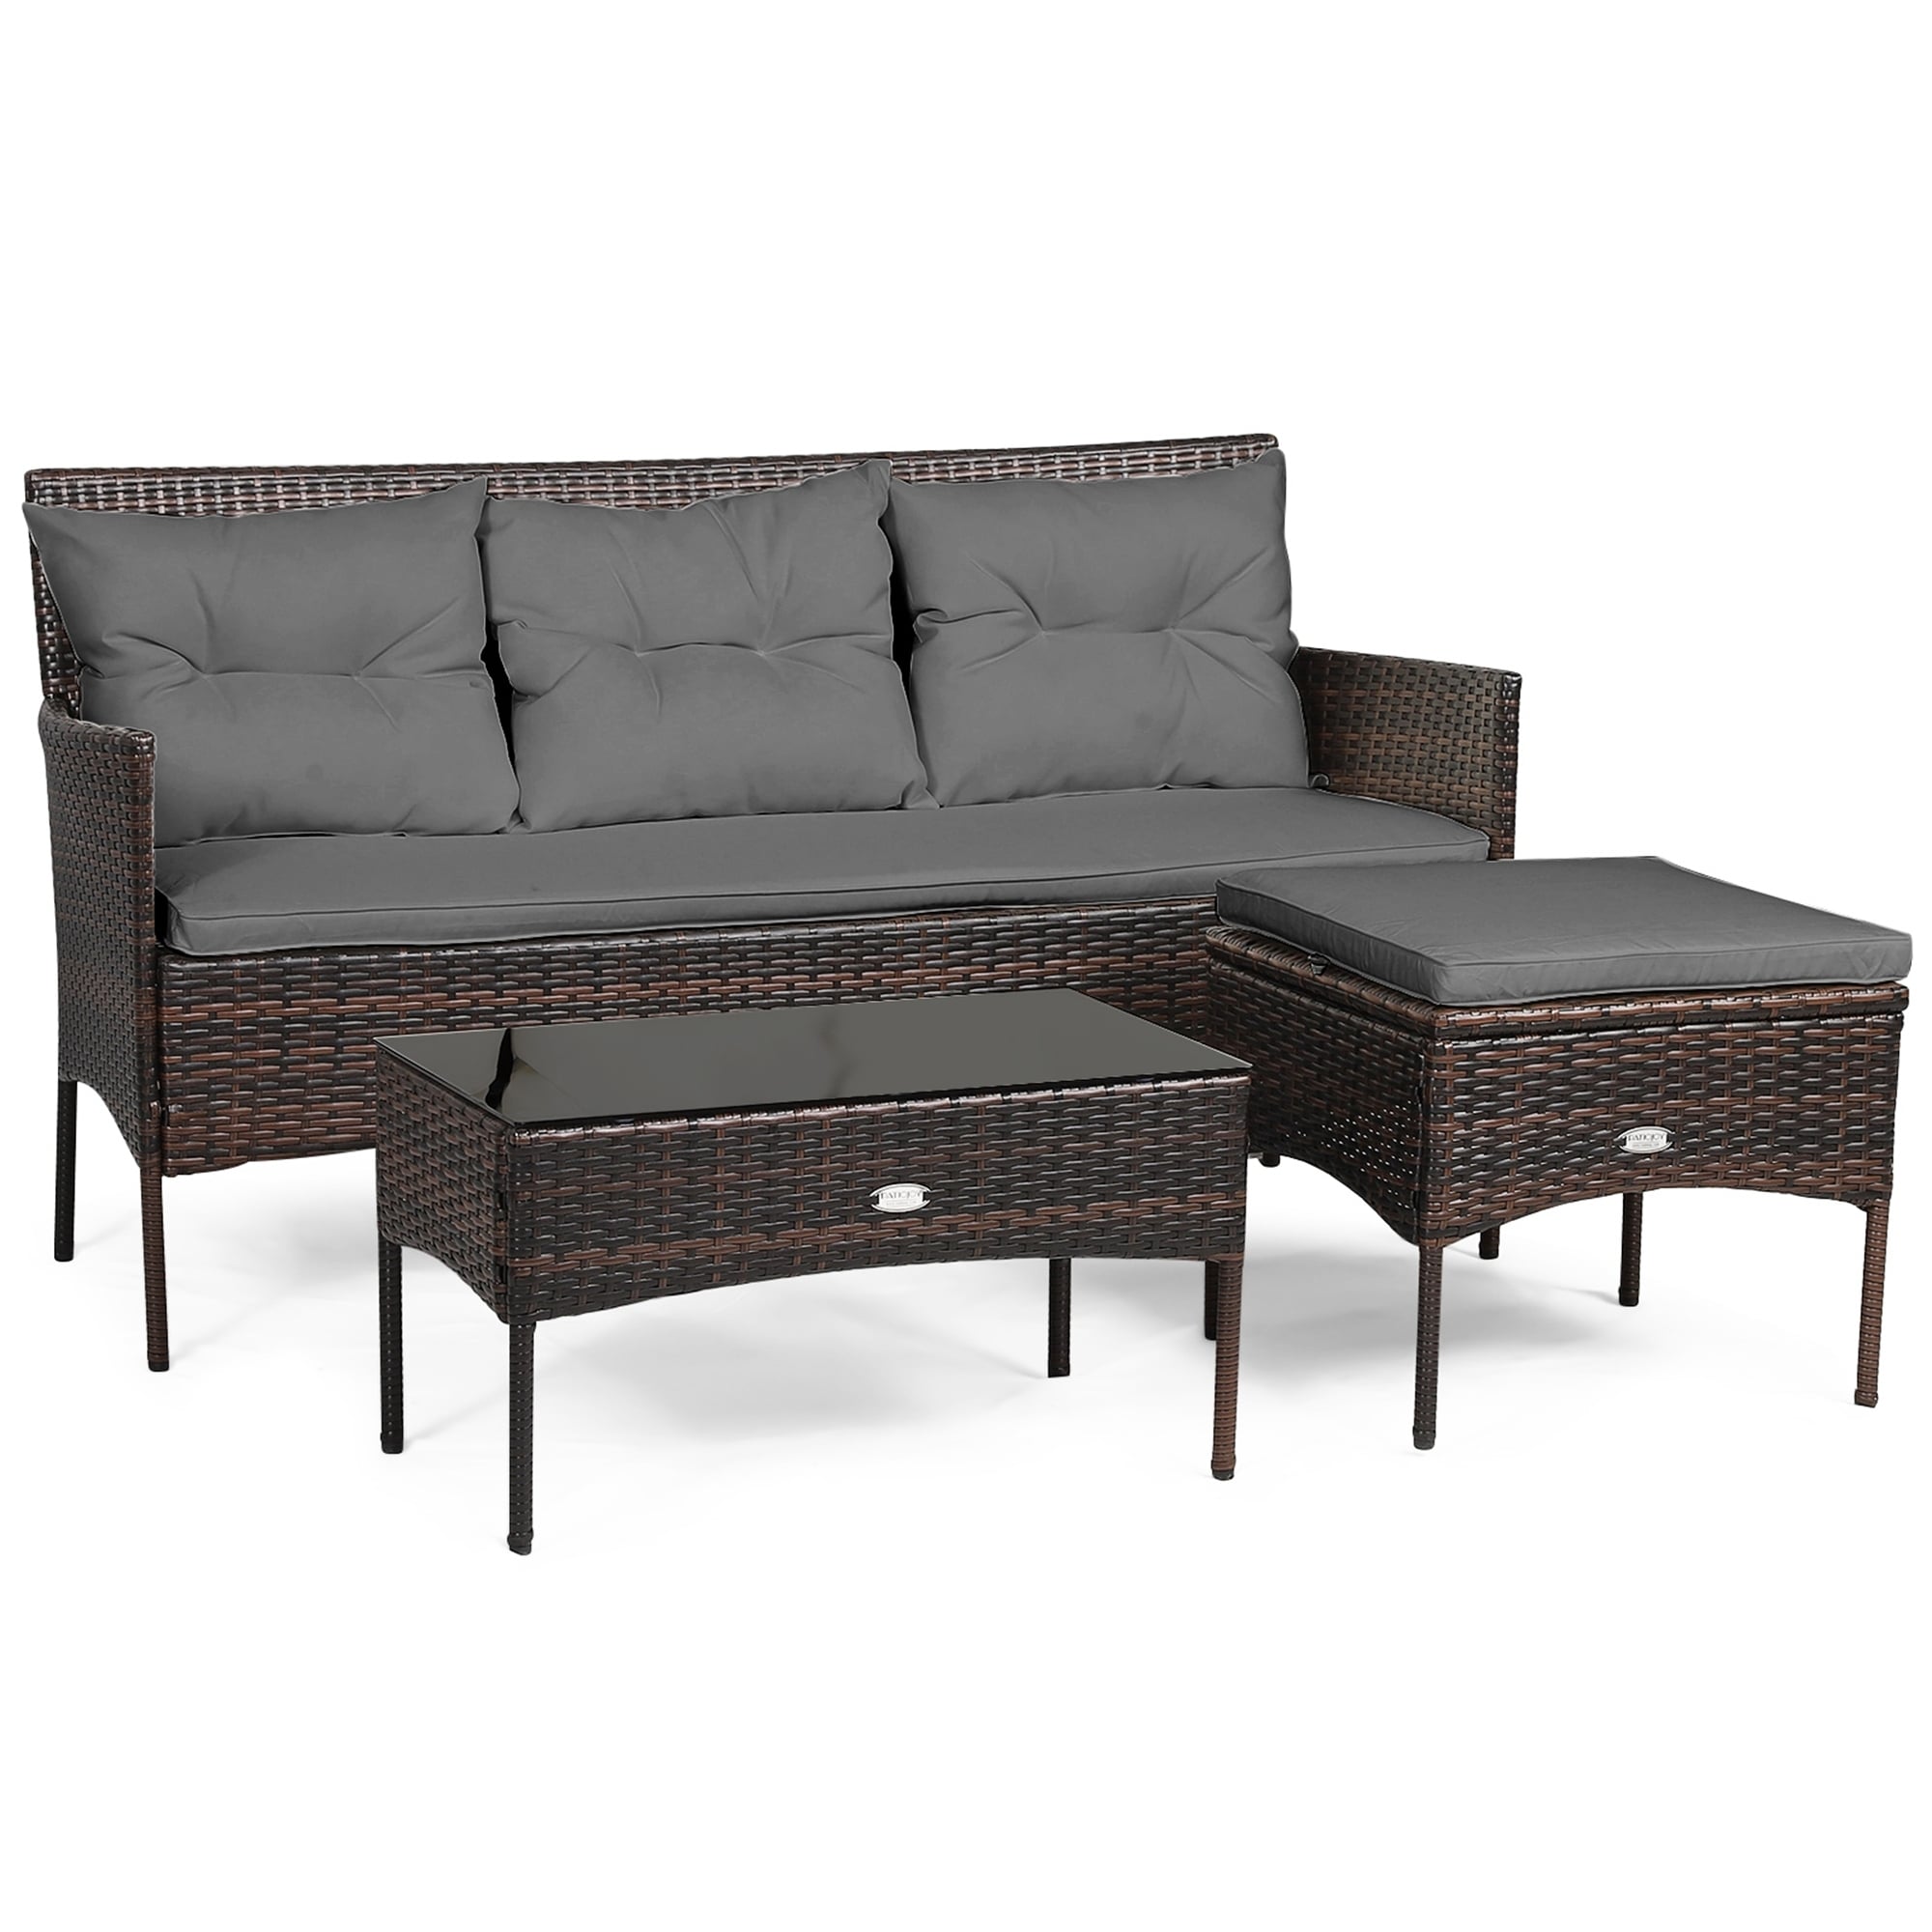 3-piece Patio Furniture Sectional Set Patio Conversation Set